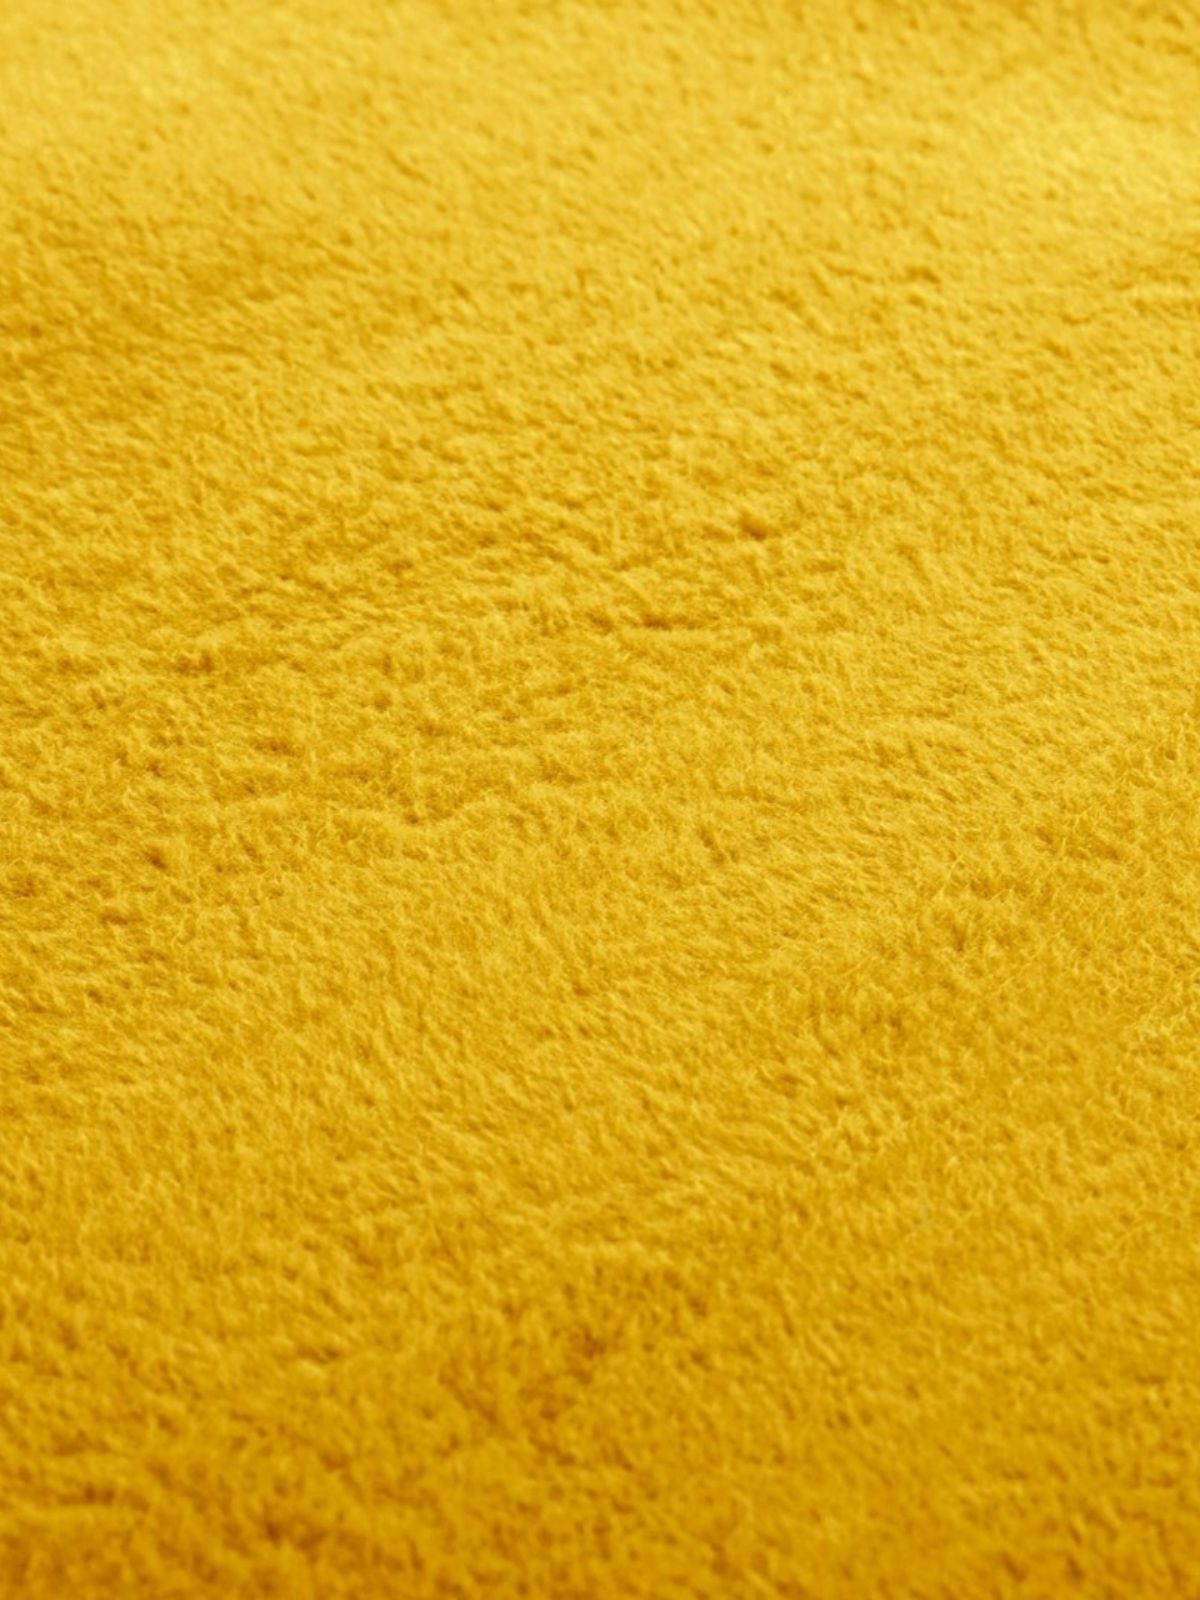 Coperta Franse in colore giallo double face 150x200 cm.-3